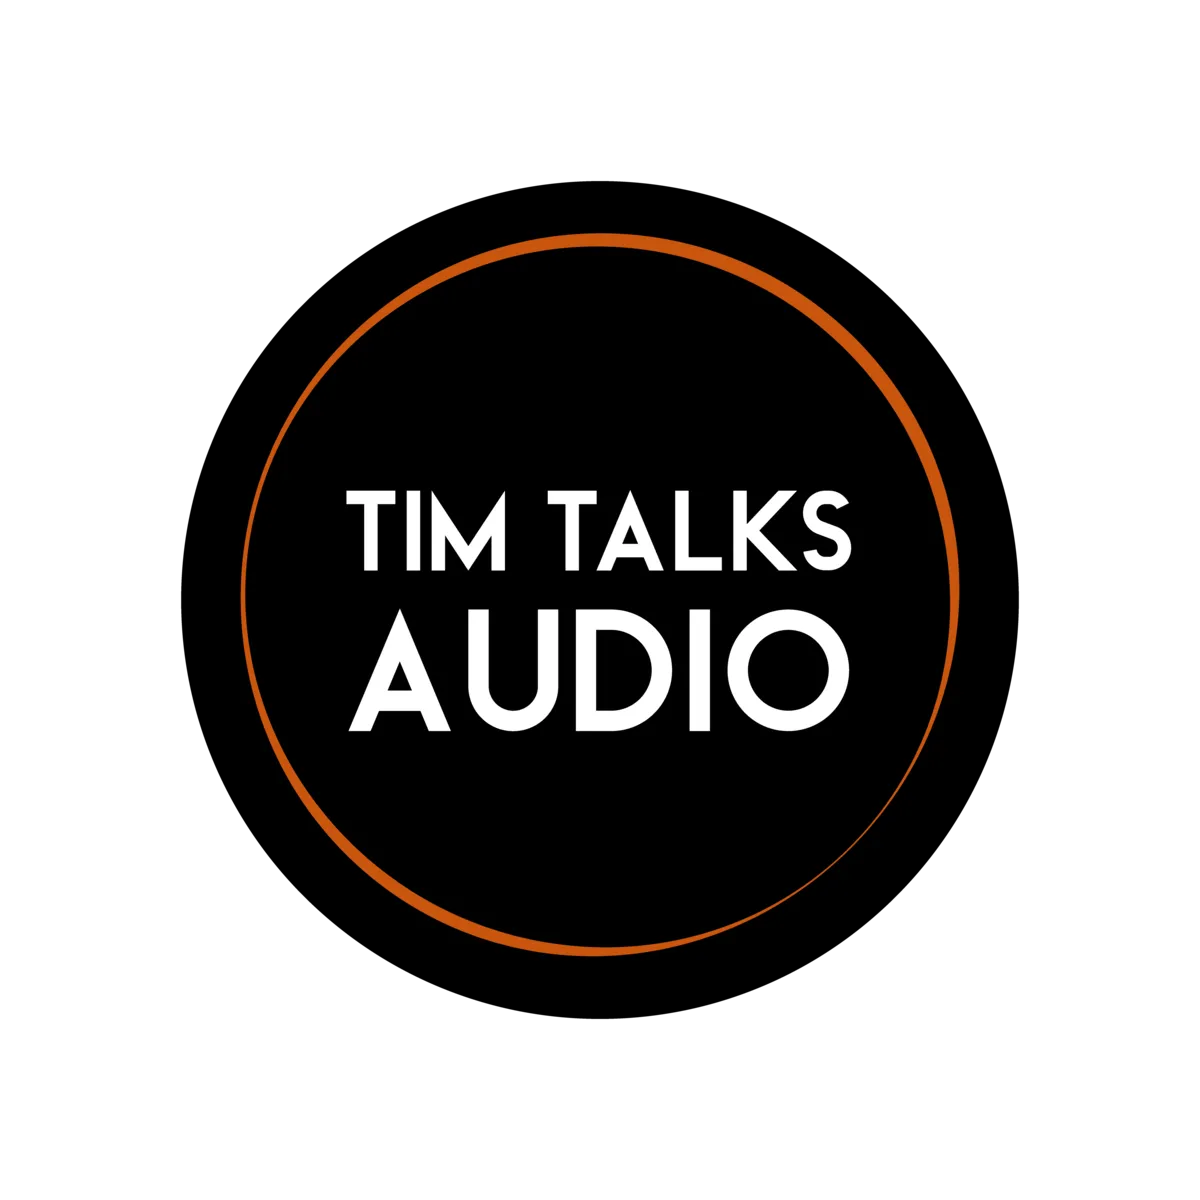 TimTalksAudio